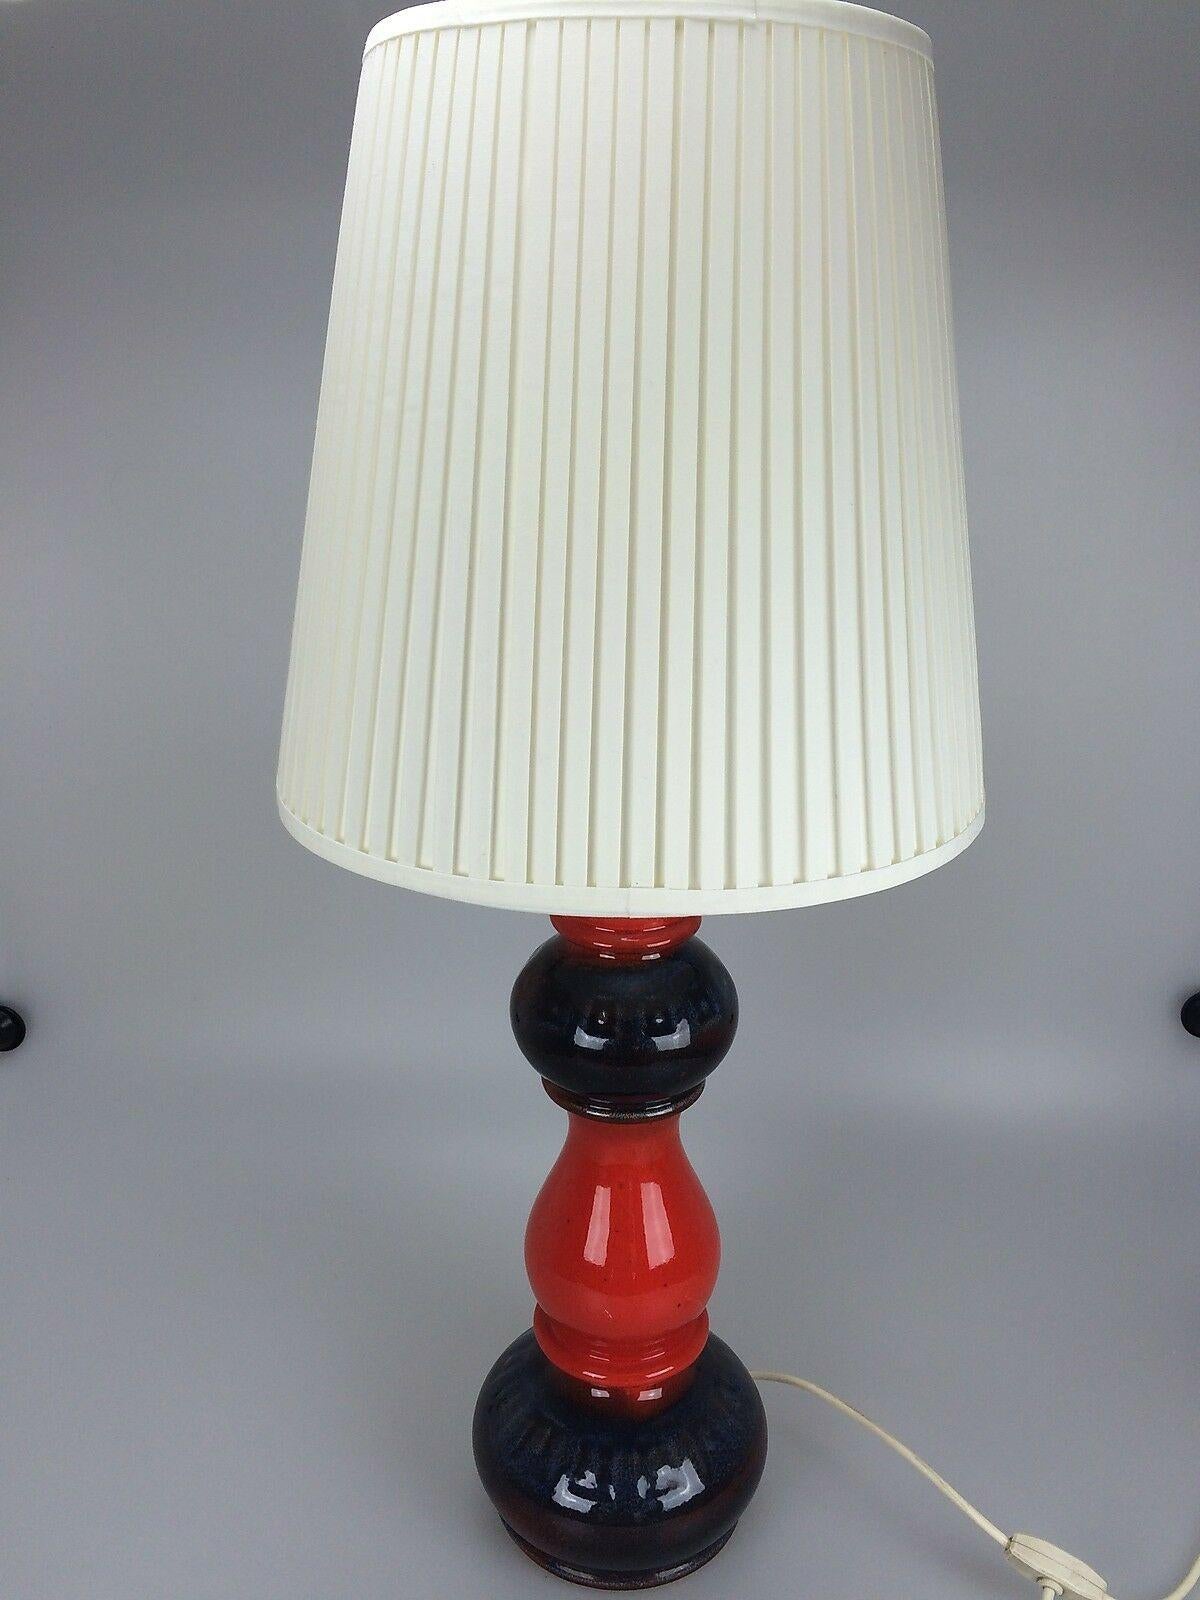 70er Jahre Lampe Licht Tischlampe Tischlampe Keramik Space Age Design rot.

Objekt: Tischleuchte

Hersteller:

Zustand: gut

Alter: etwa 1960-1970

Abmessungen:

Durchmesser = 34,5 cm
Höhe = 78cm

Sonstige Anmerkungen:

Die Bilder